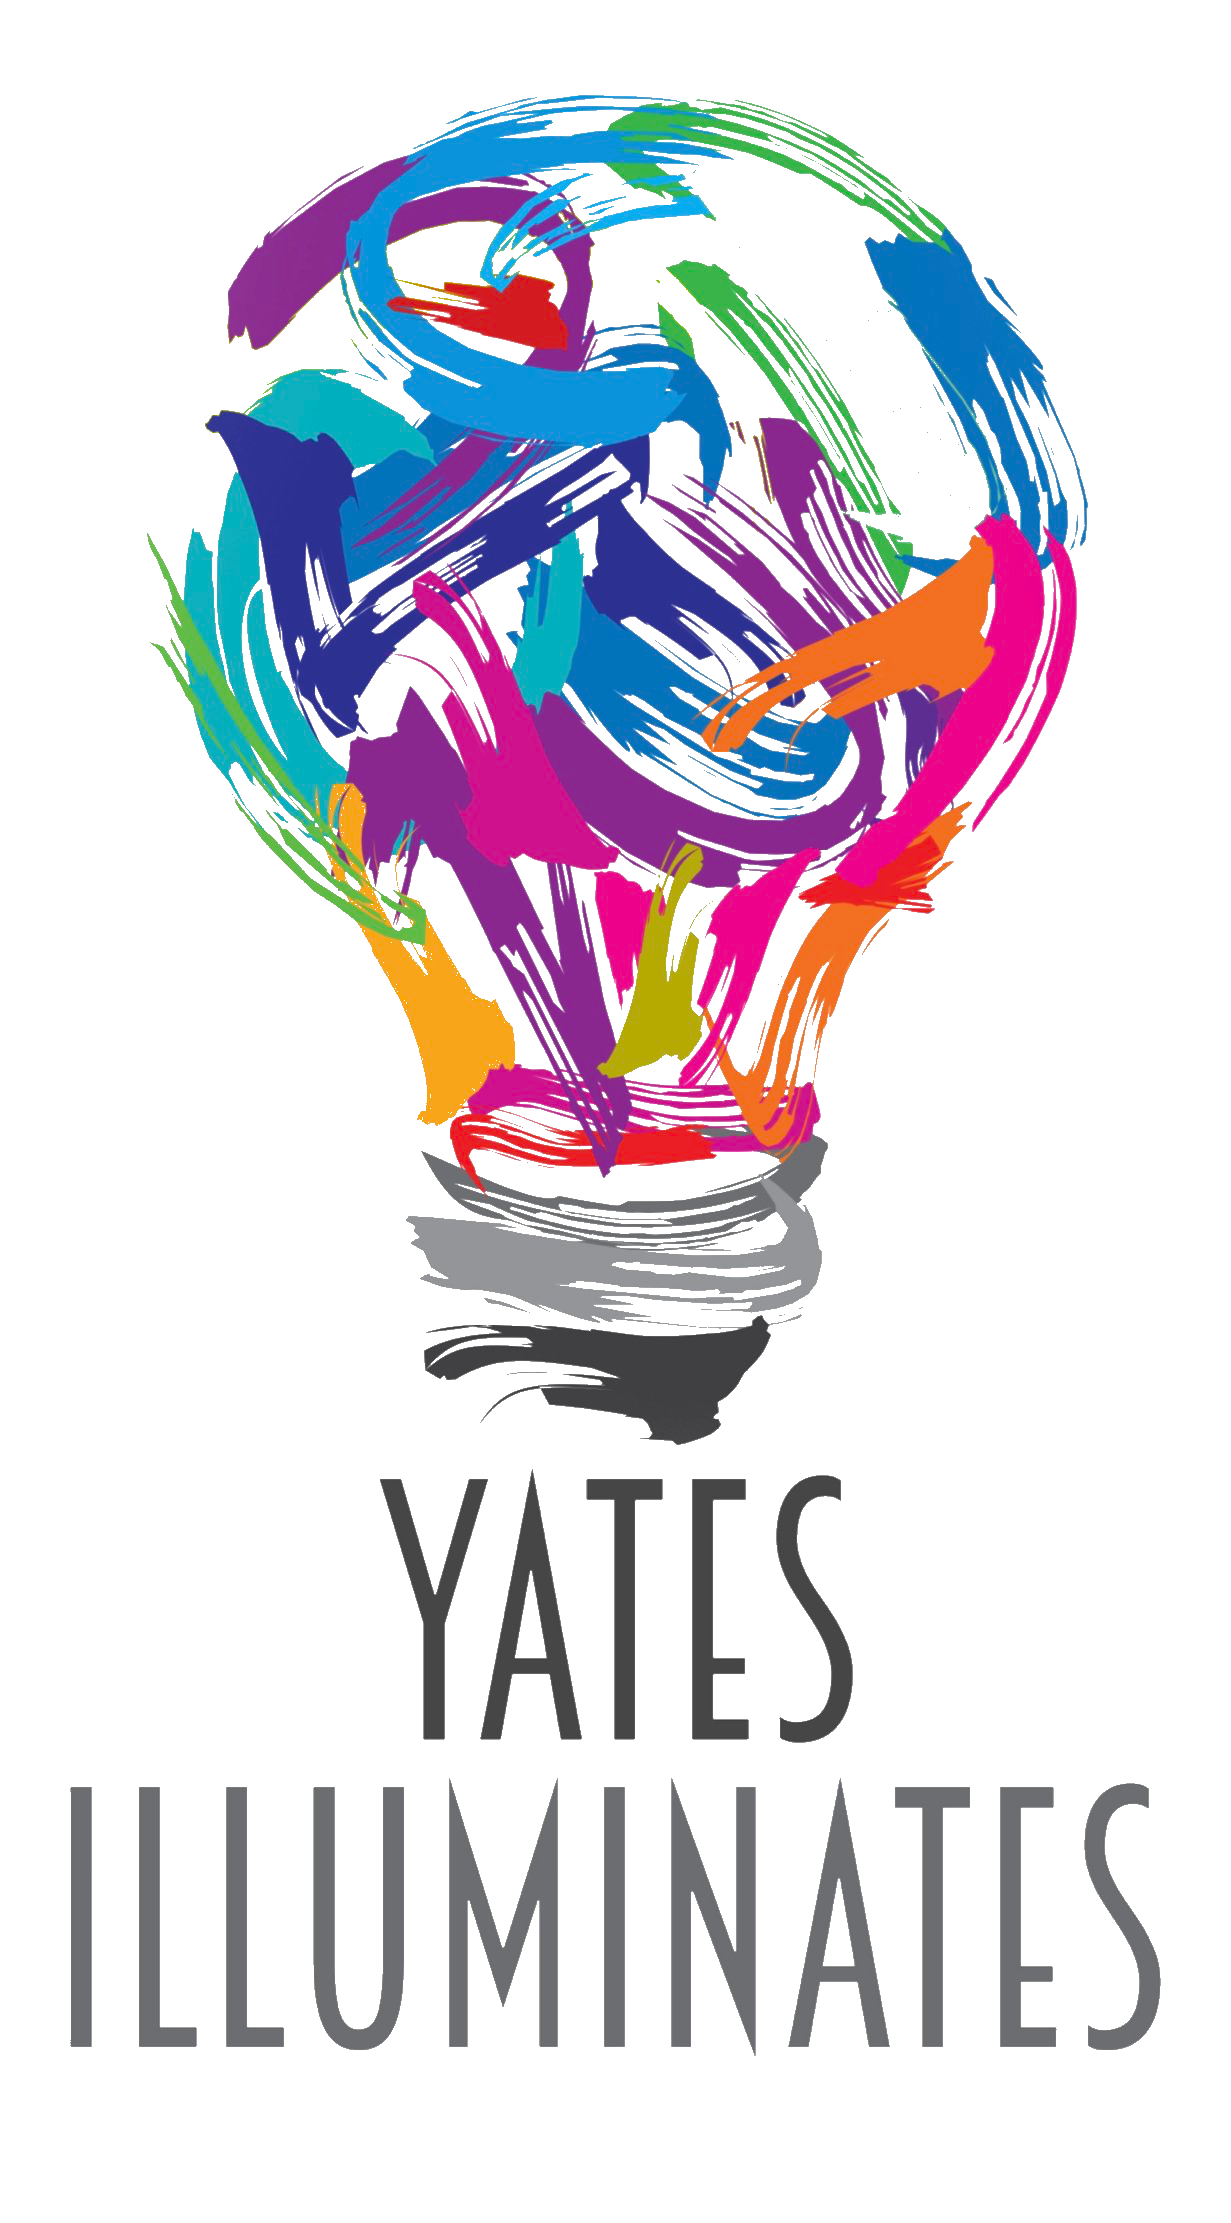 Yates Illuminates